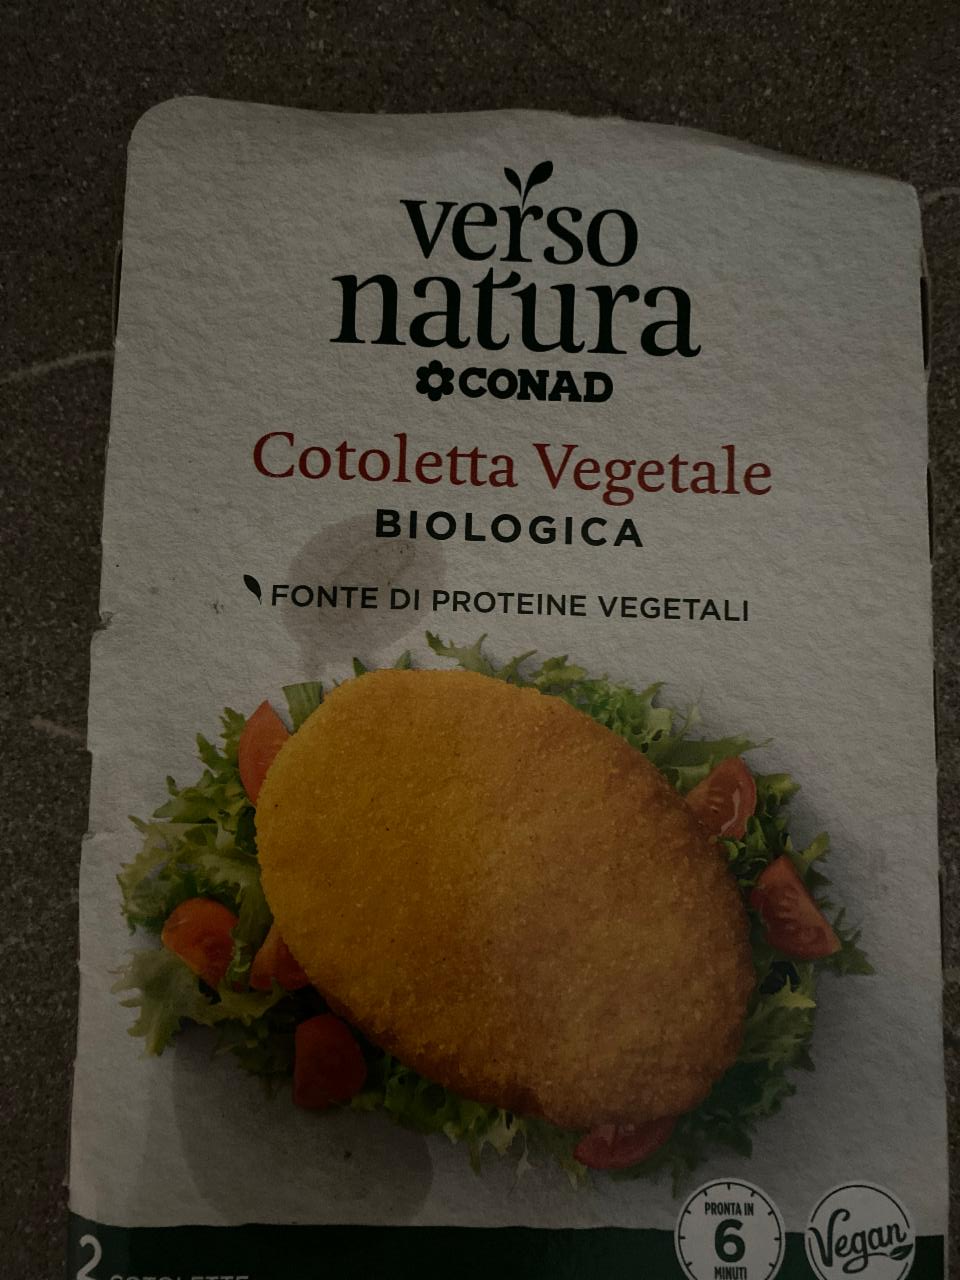 Фото - Cotoletta vegetale biologica Verso natura Conad